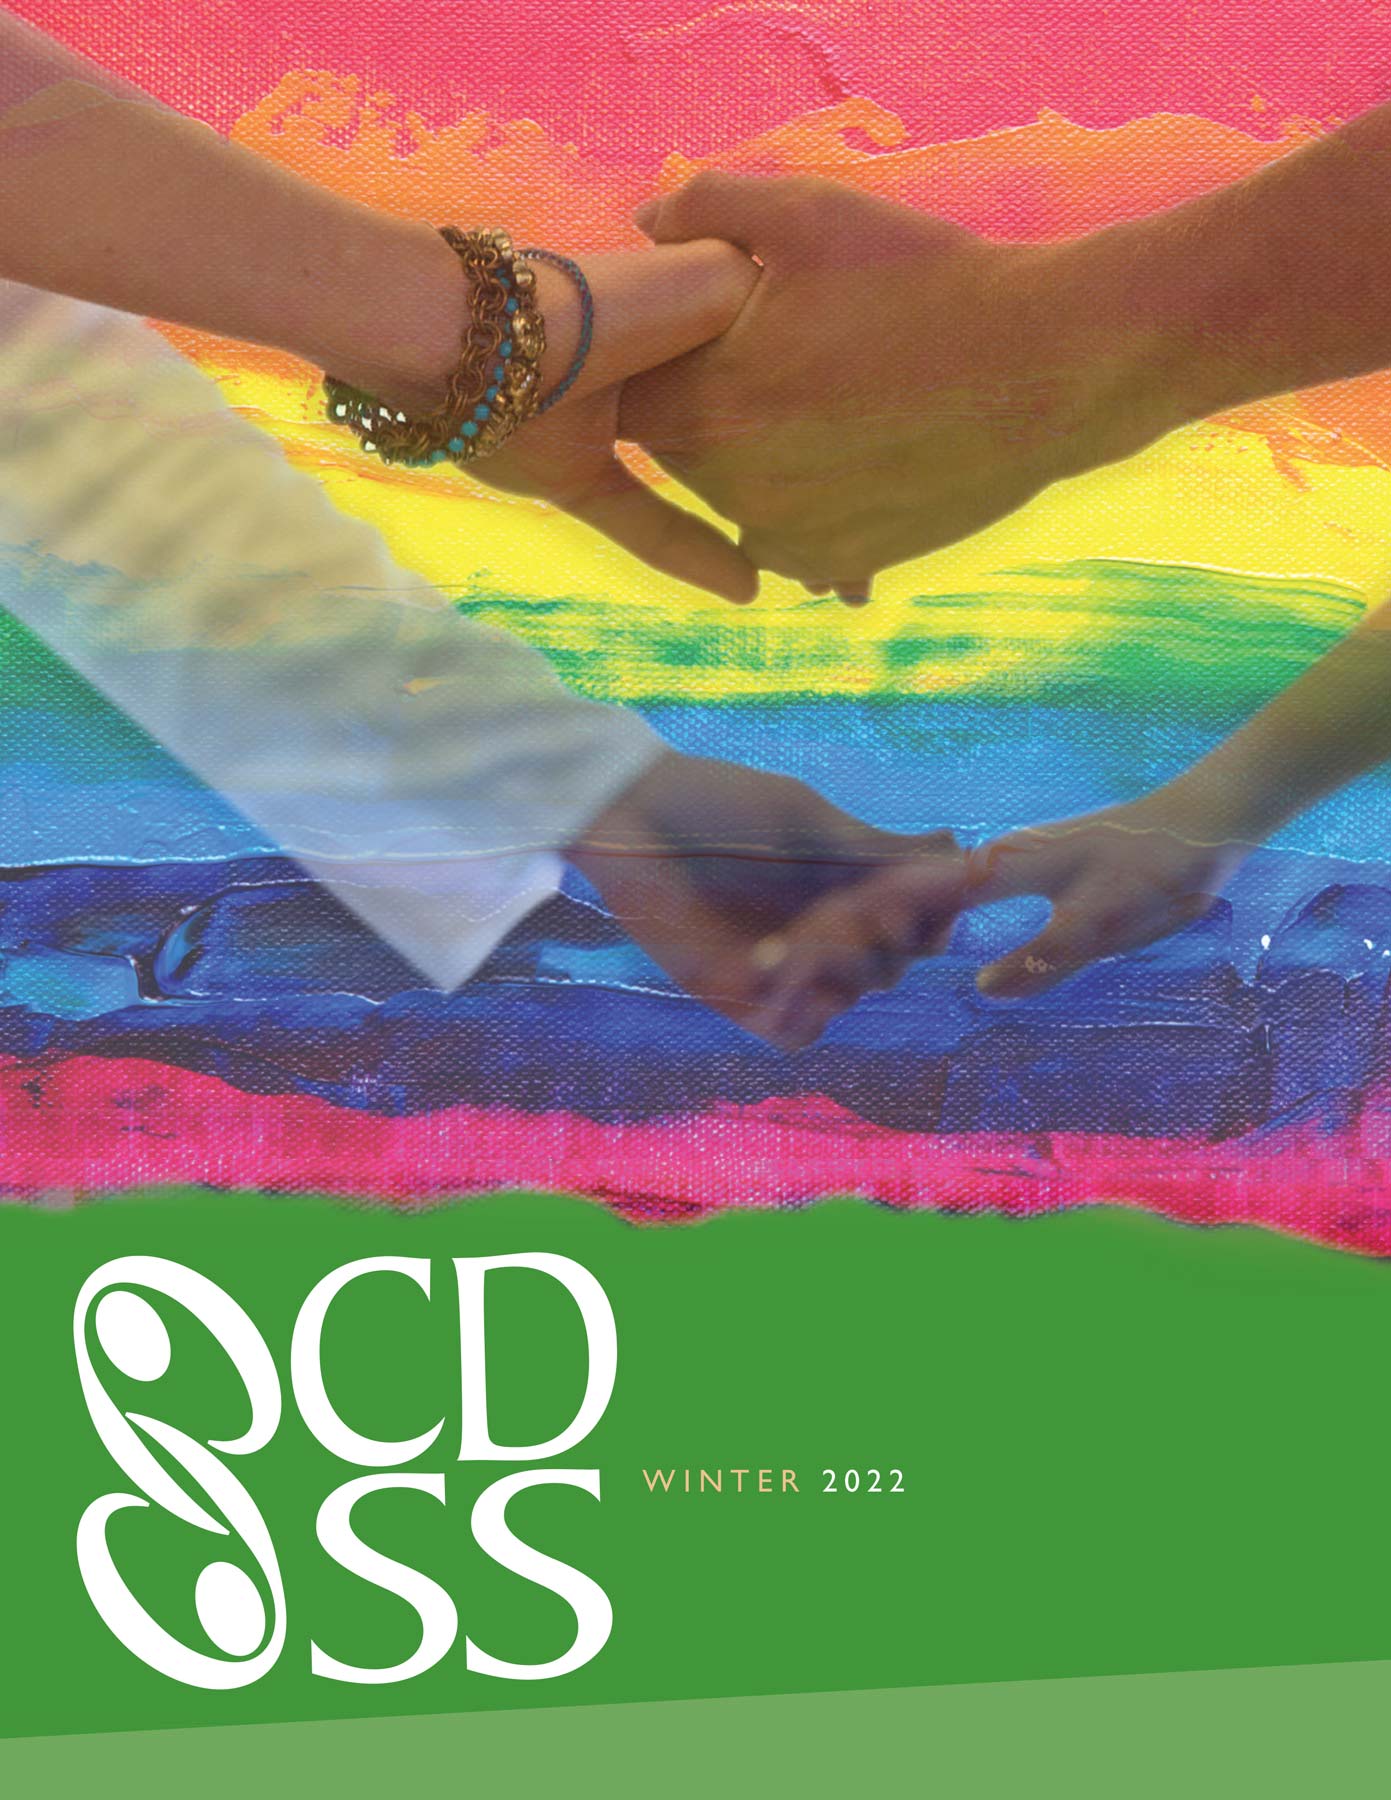 CDSS News: Winter 2022